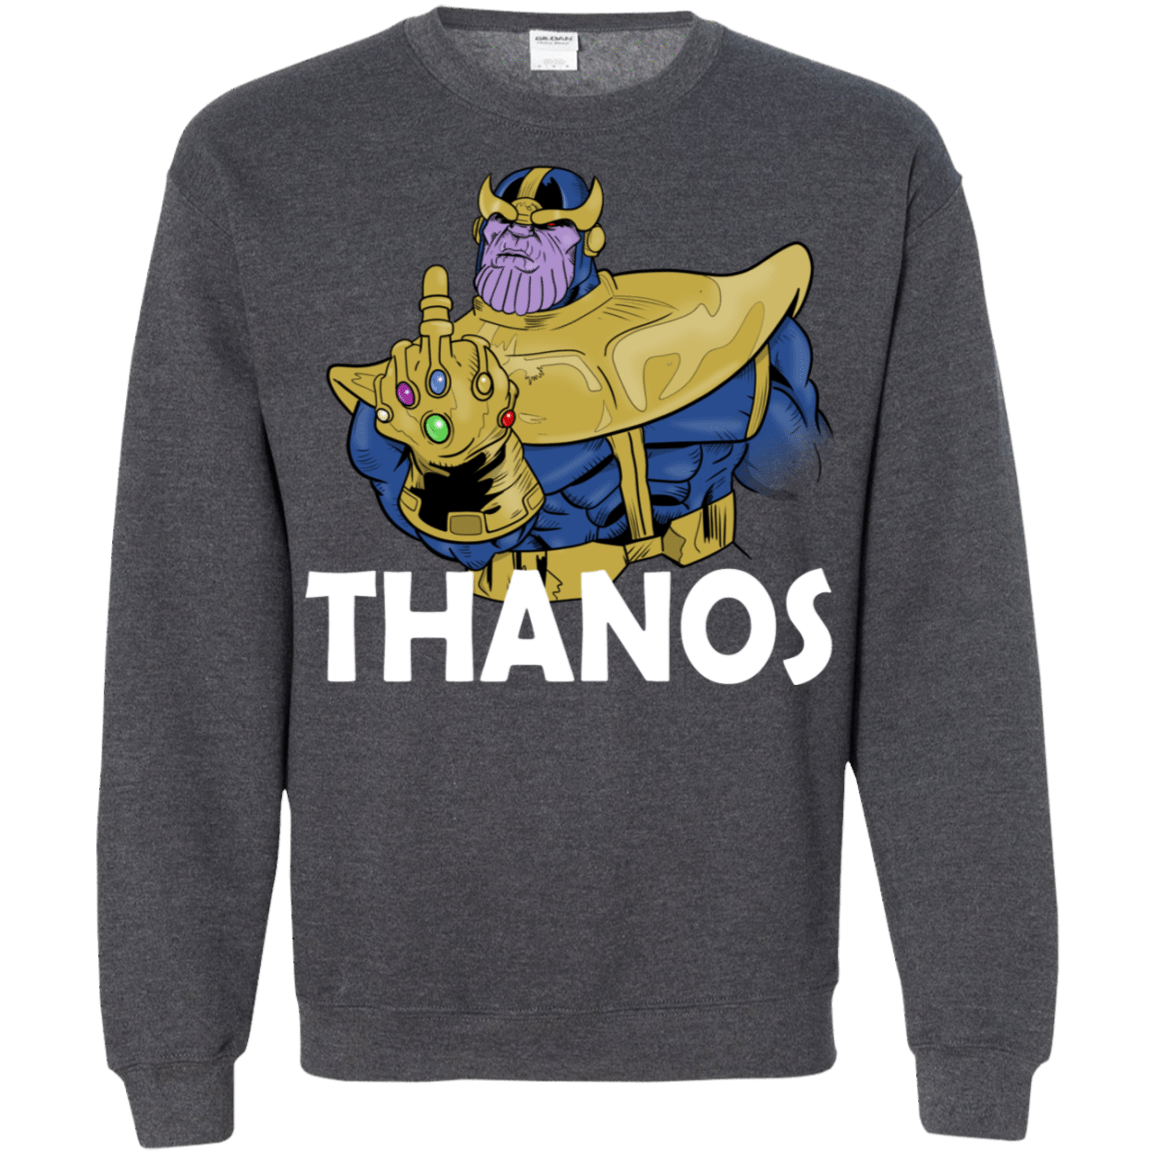 Sweatshirts Dark Heather / S Thanos Cash Crewneck Sweatshirt